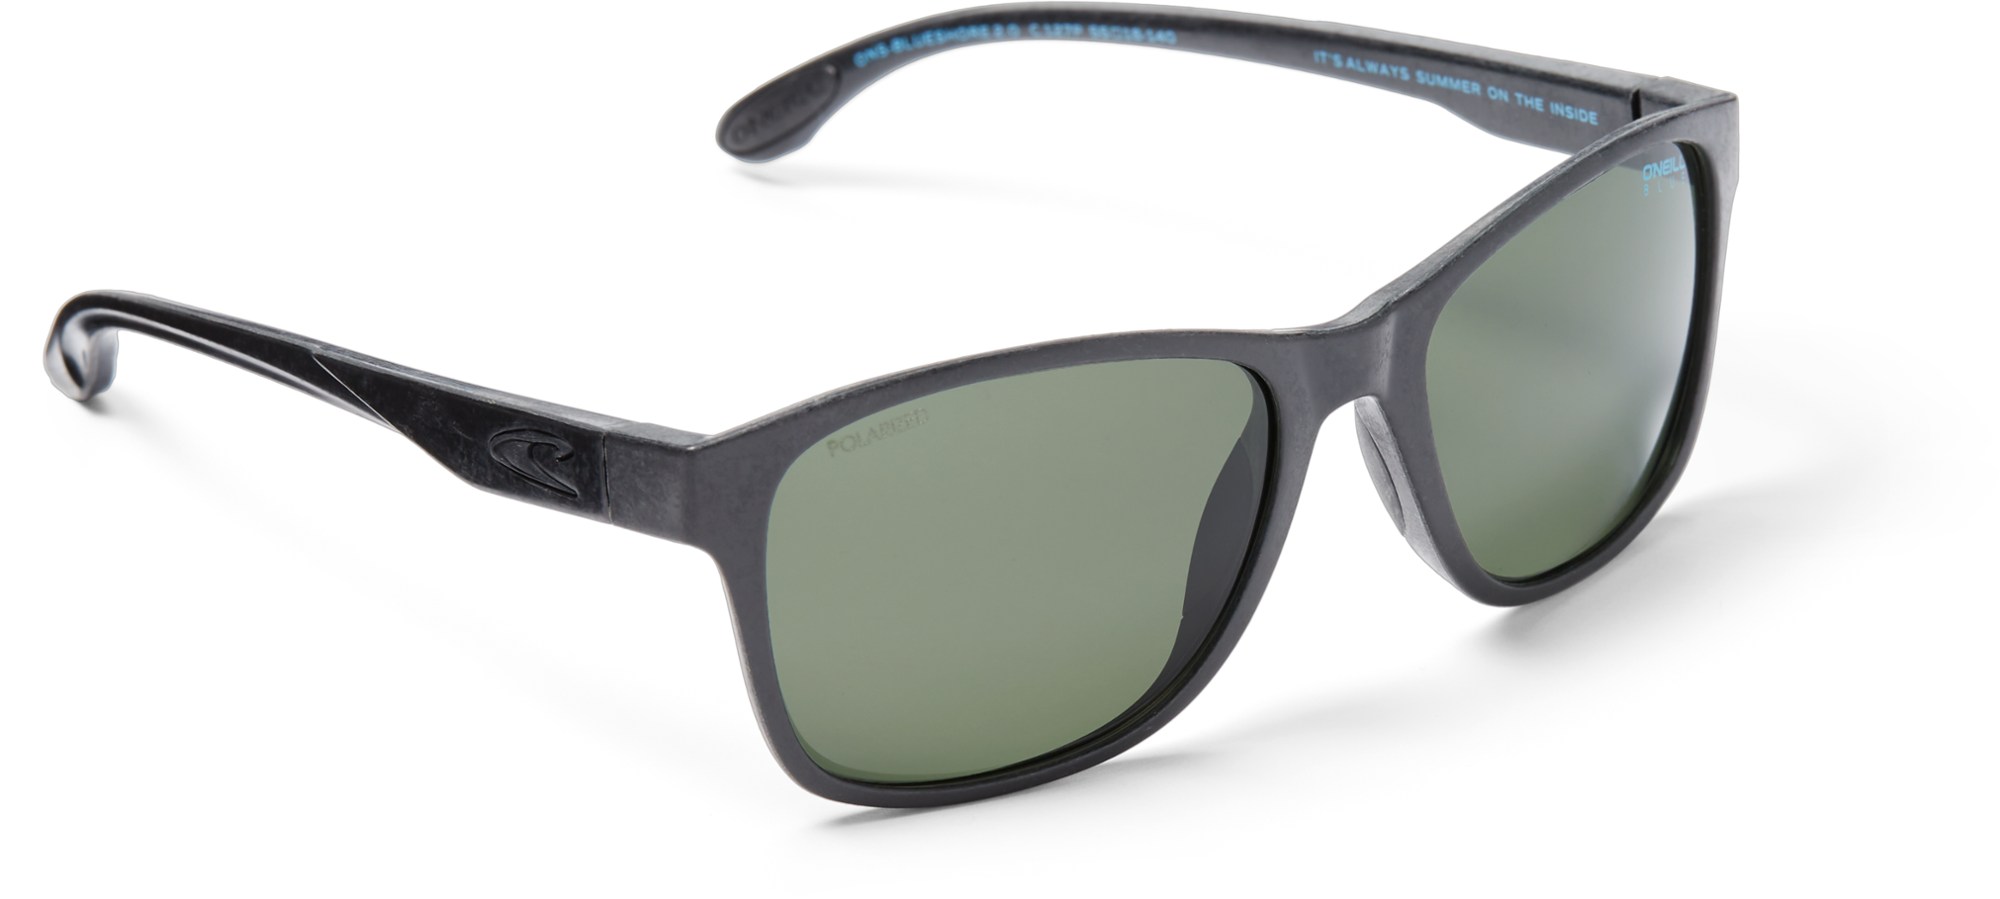 Поляризованные солнцезащитные очки Blueshore O'NEILL Sunglasses, черный фото